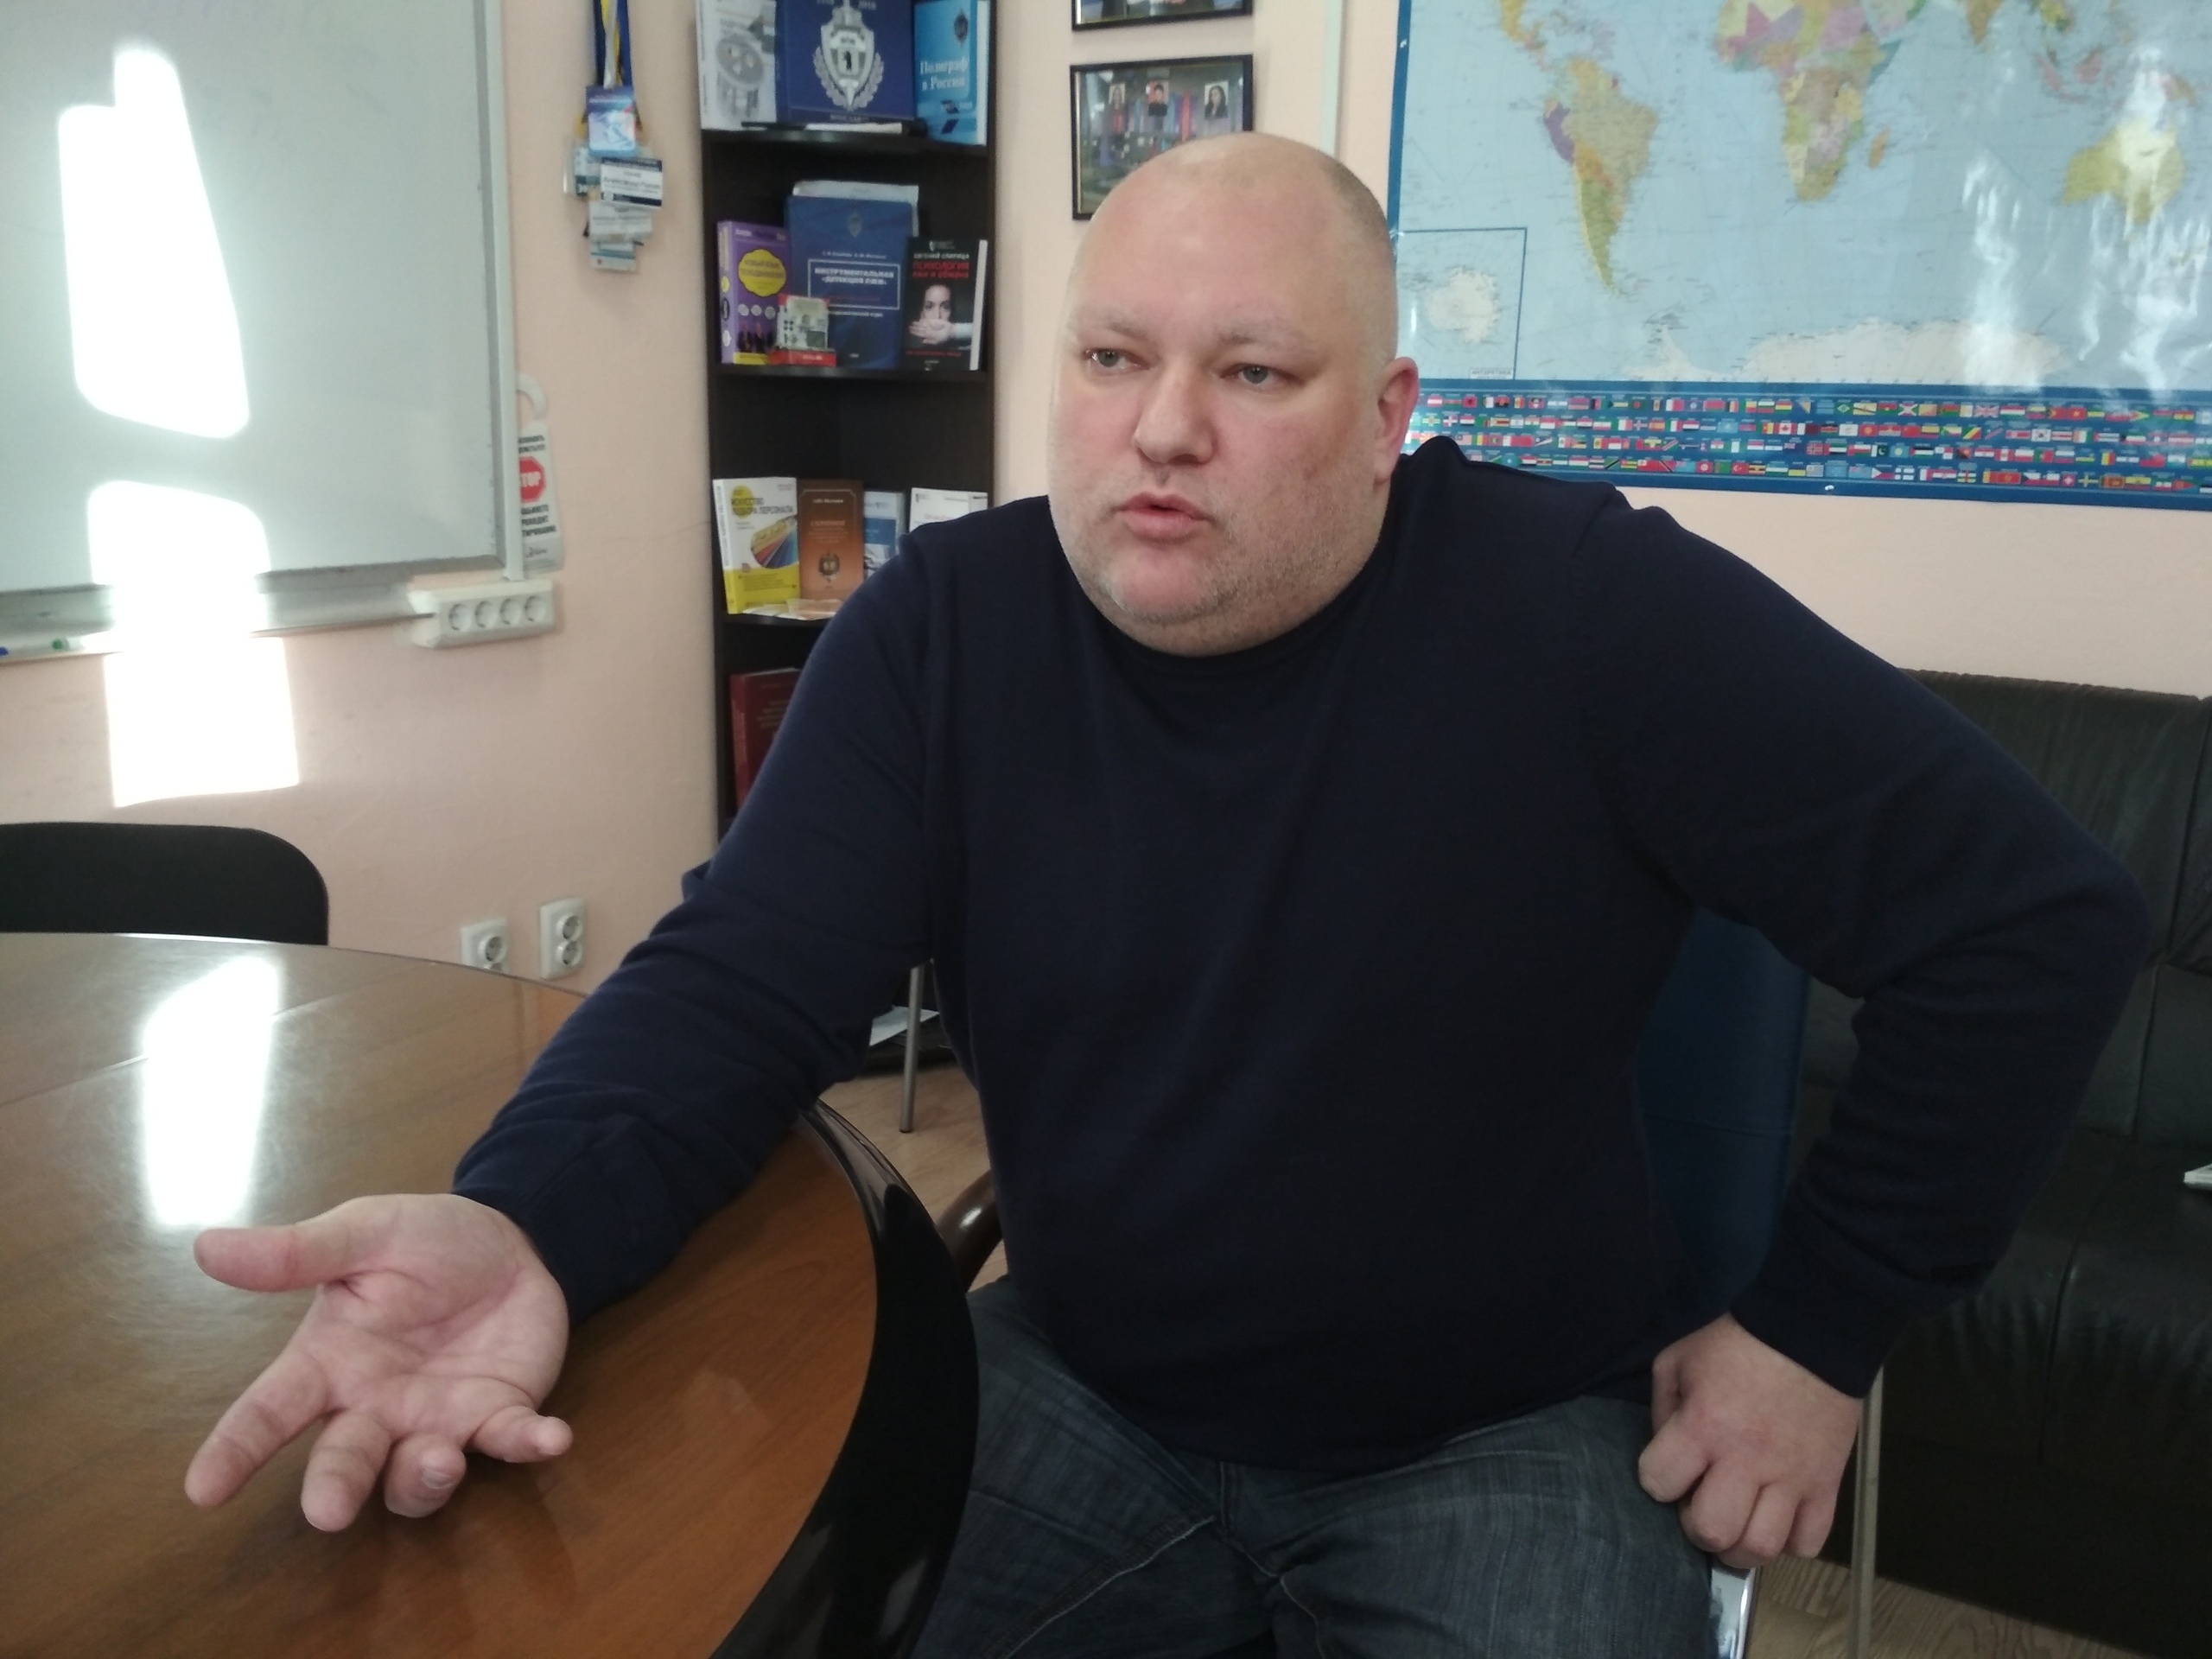  "Вопль отчаяния министра": врач из Ярославля дал печальные прогнозы по ковиду